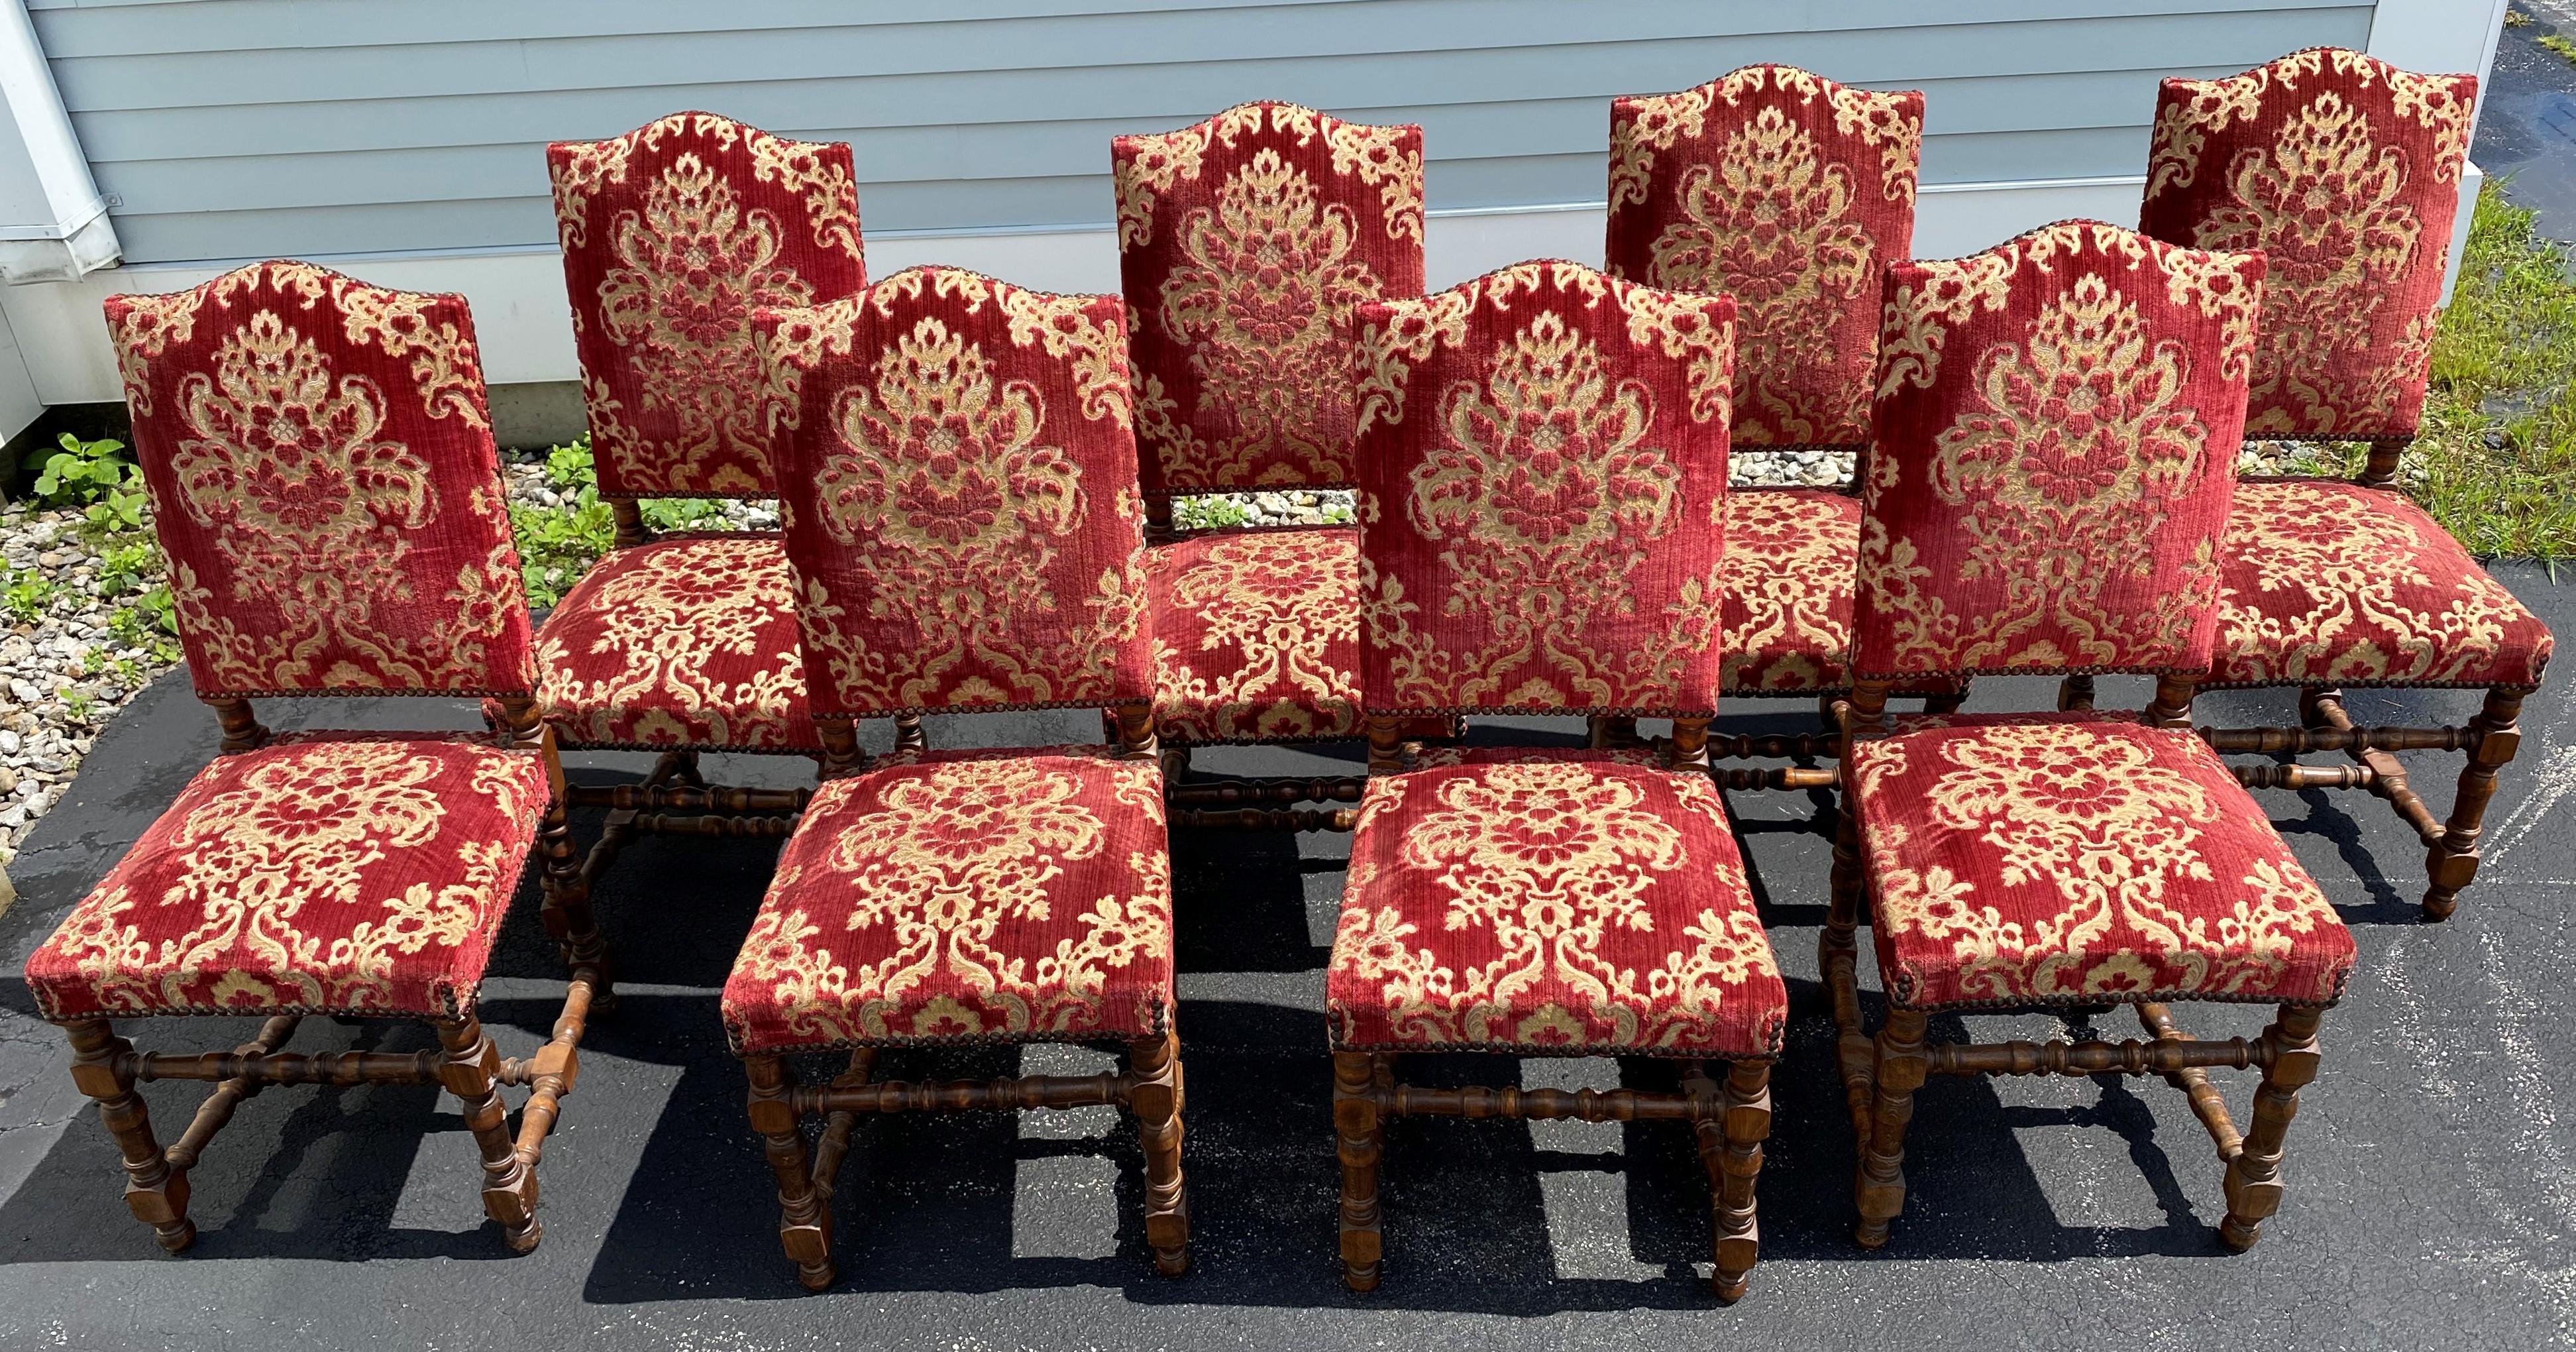 Eine feine Reihe von Louis XIII-Stil Nussbaum Beistellstühle in floralen roten Velours Polsterung mit Nagel-Finish Grenze, gepolsterte Rückenlehnen, gewölbten Kamm, und schön gedreht Beine mit H-Form Bahren. Die Garnitur ist französischen Ursprungs,